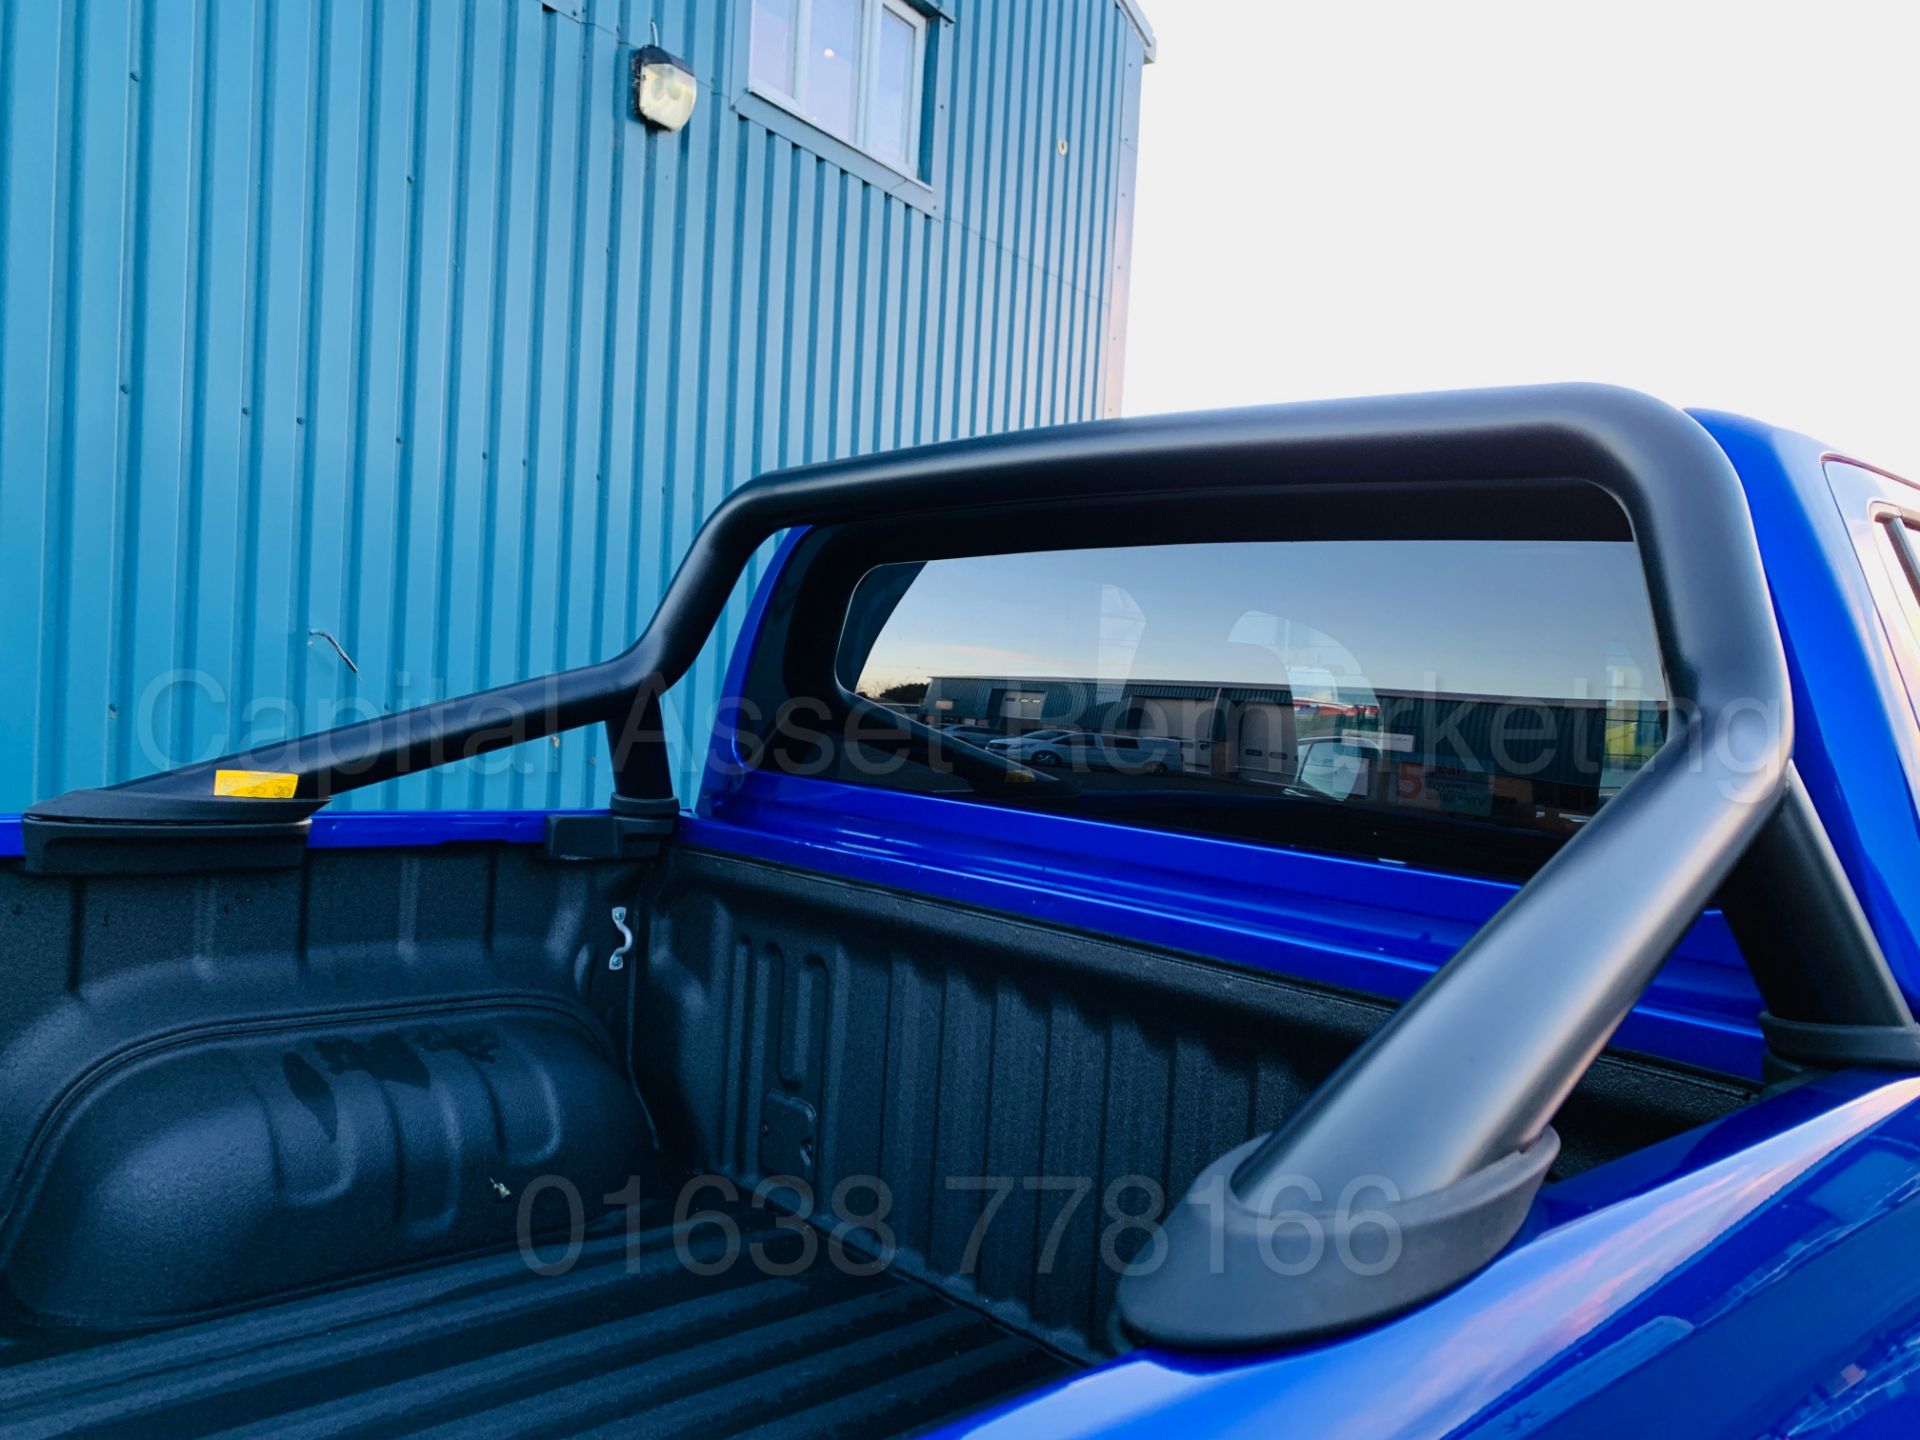 TOYOTA HILUX *INVINCIBLE X - LE* D/CAB PICK-UP (2019 MODEL) 'D-4D - AUTO - LEATHER - SAT NAV' *LOOK* - Image 30 of 65